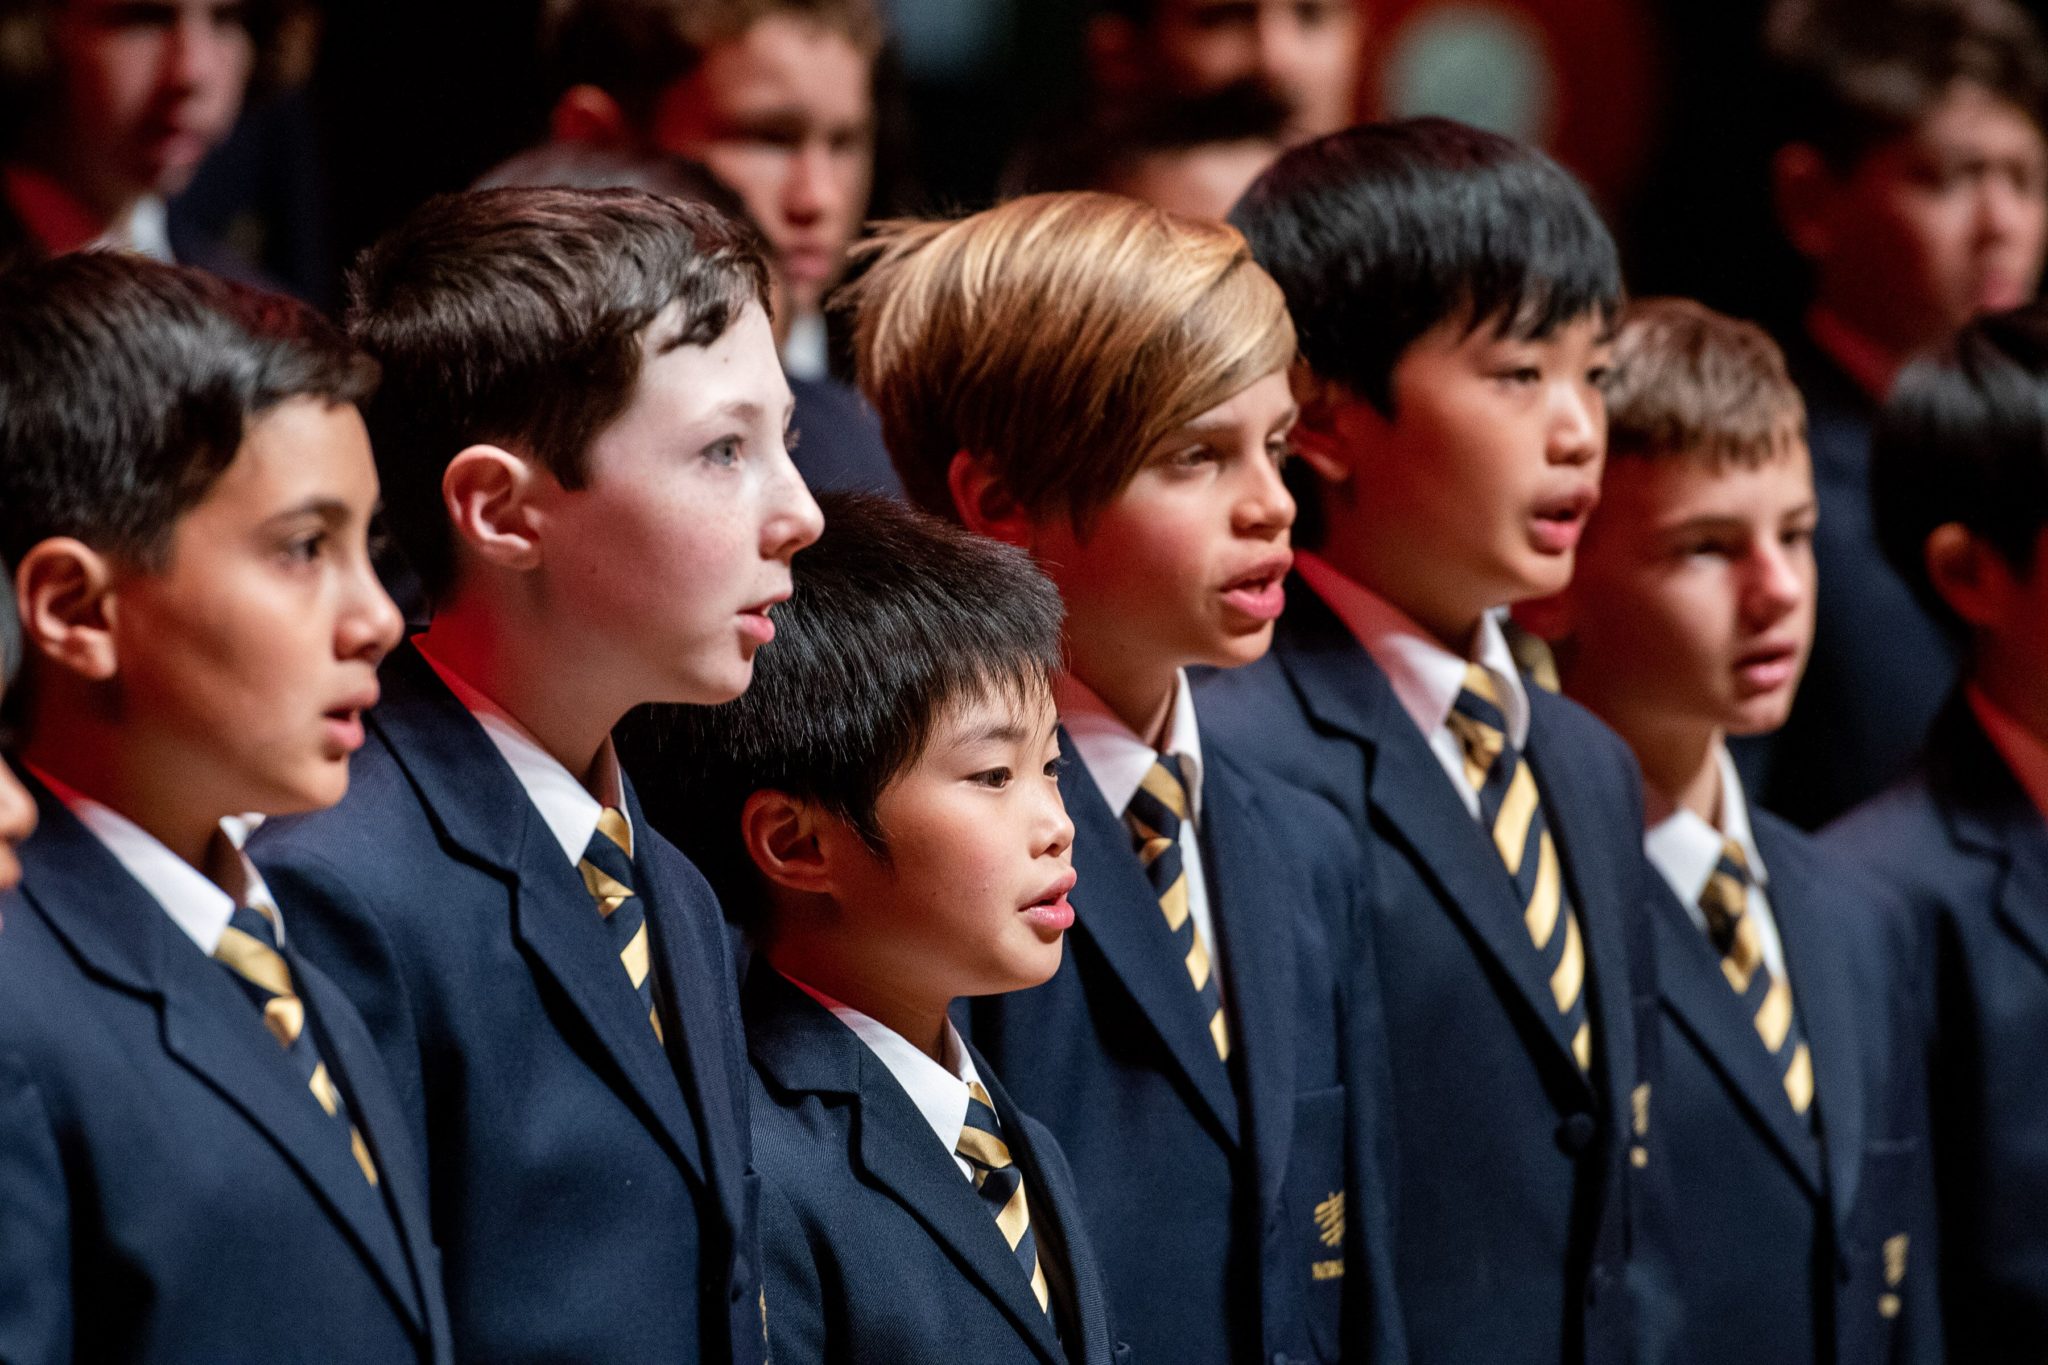 National Boys Choir of Australia Mid-Year Concert – National Boys Choir